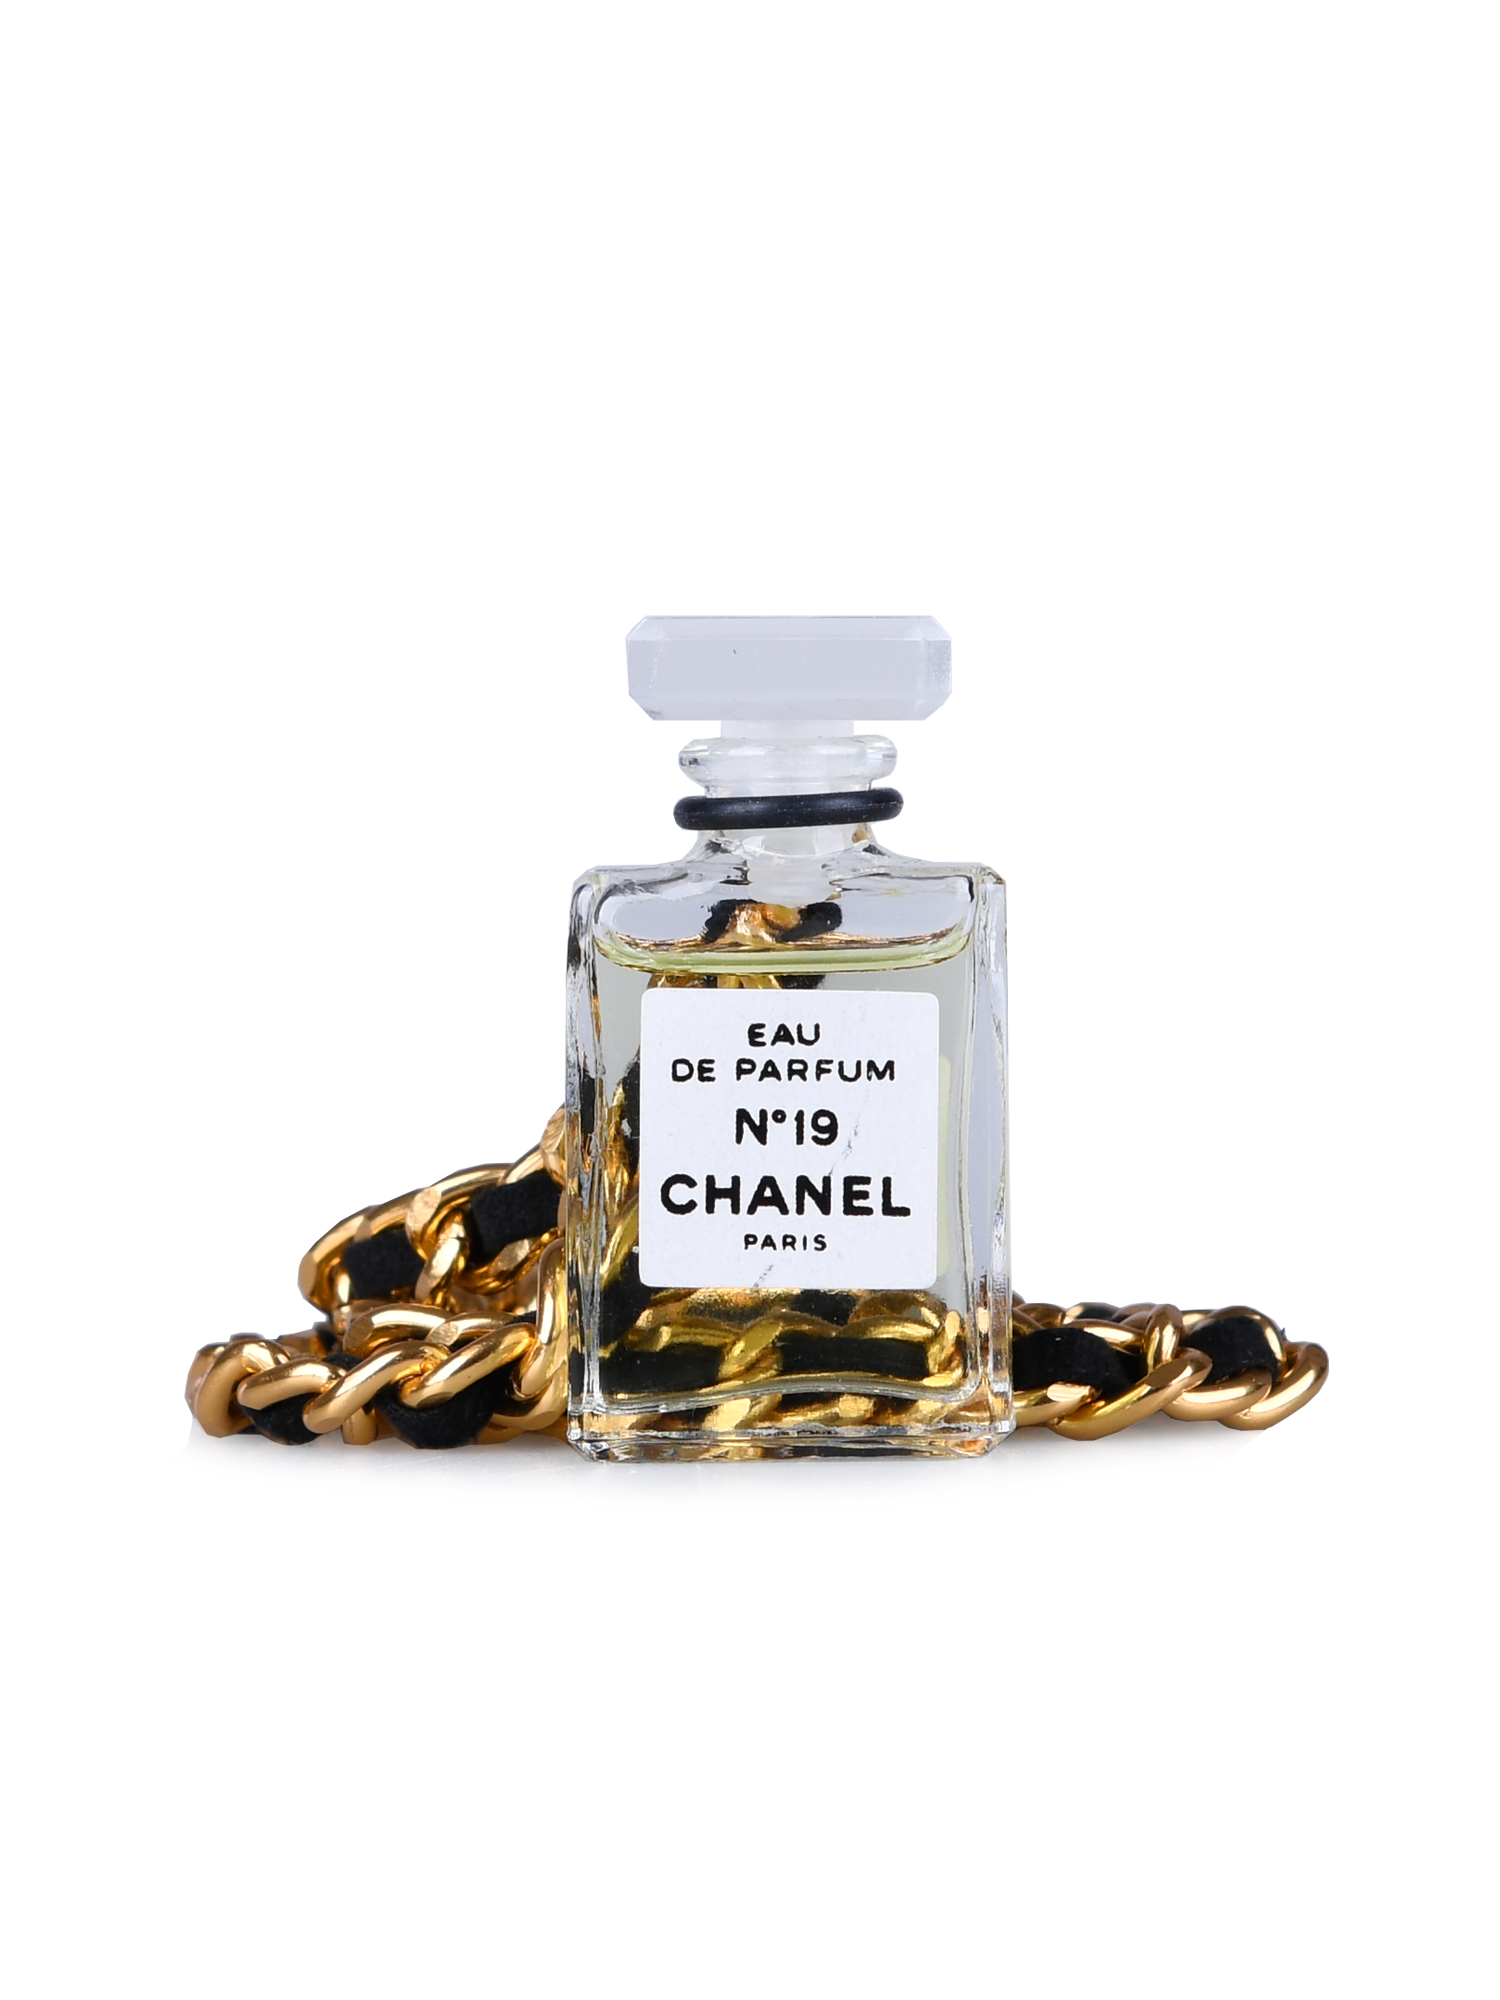 Chanel No 19 Eau De Parfum by Chanel 4 Ml Vintage Miniature No 